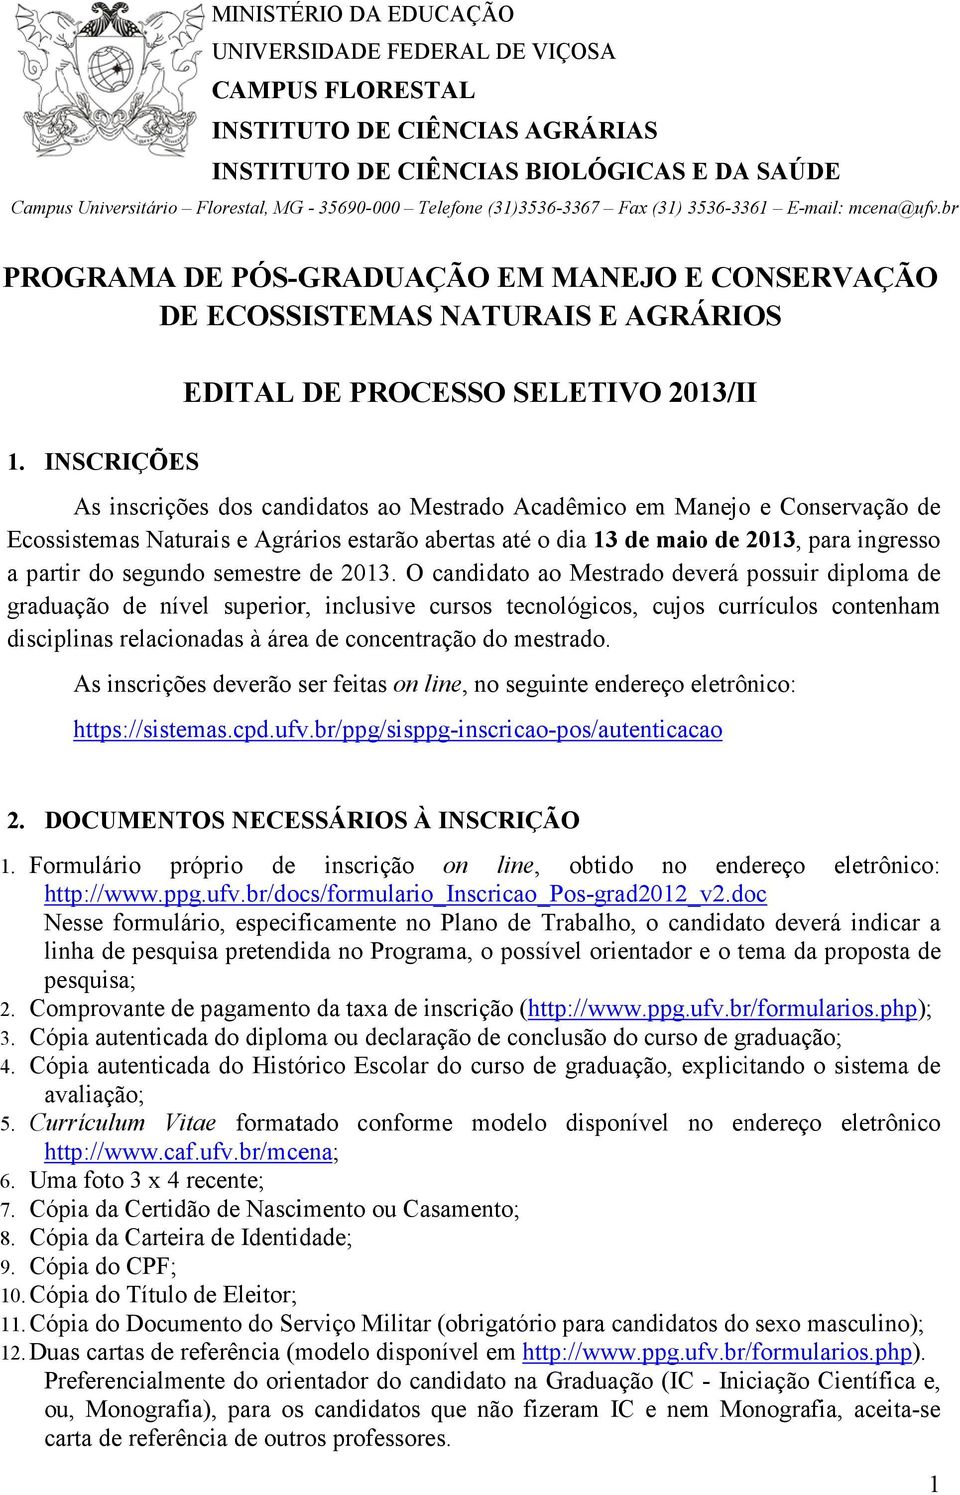 INSCRIÇÕES As inscrições dos candidatos ao Mestrado Acadêmico em Manejo e Conservação de Ecossistemas Naturais e Agrários estarão abertas até o dia 13 de maio de 2013, para ingresso a partir do